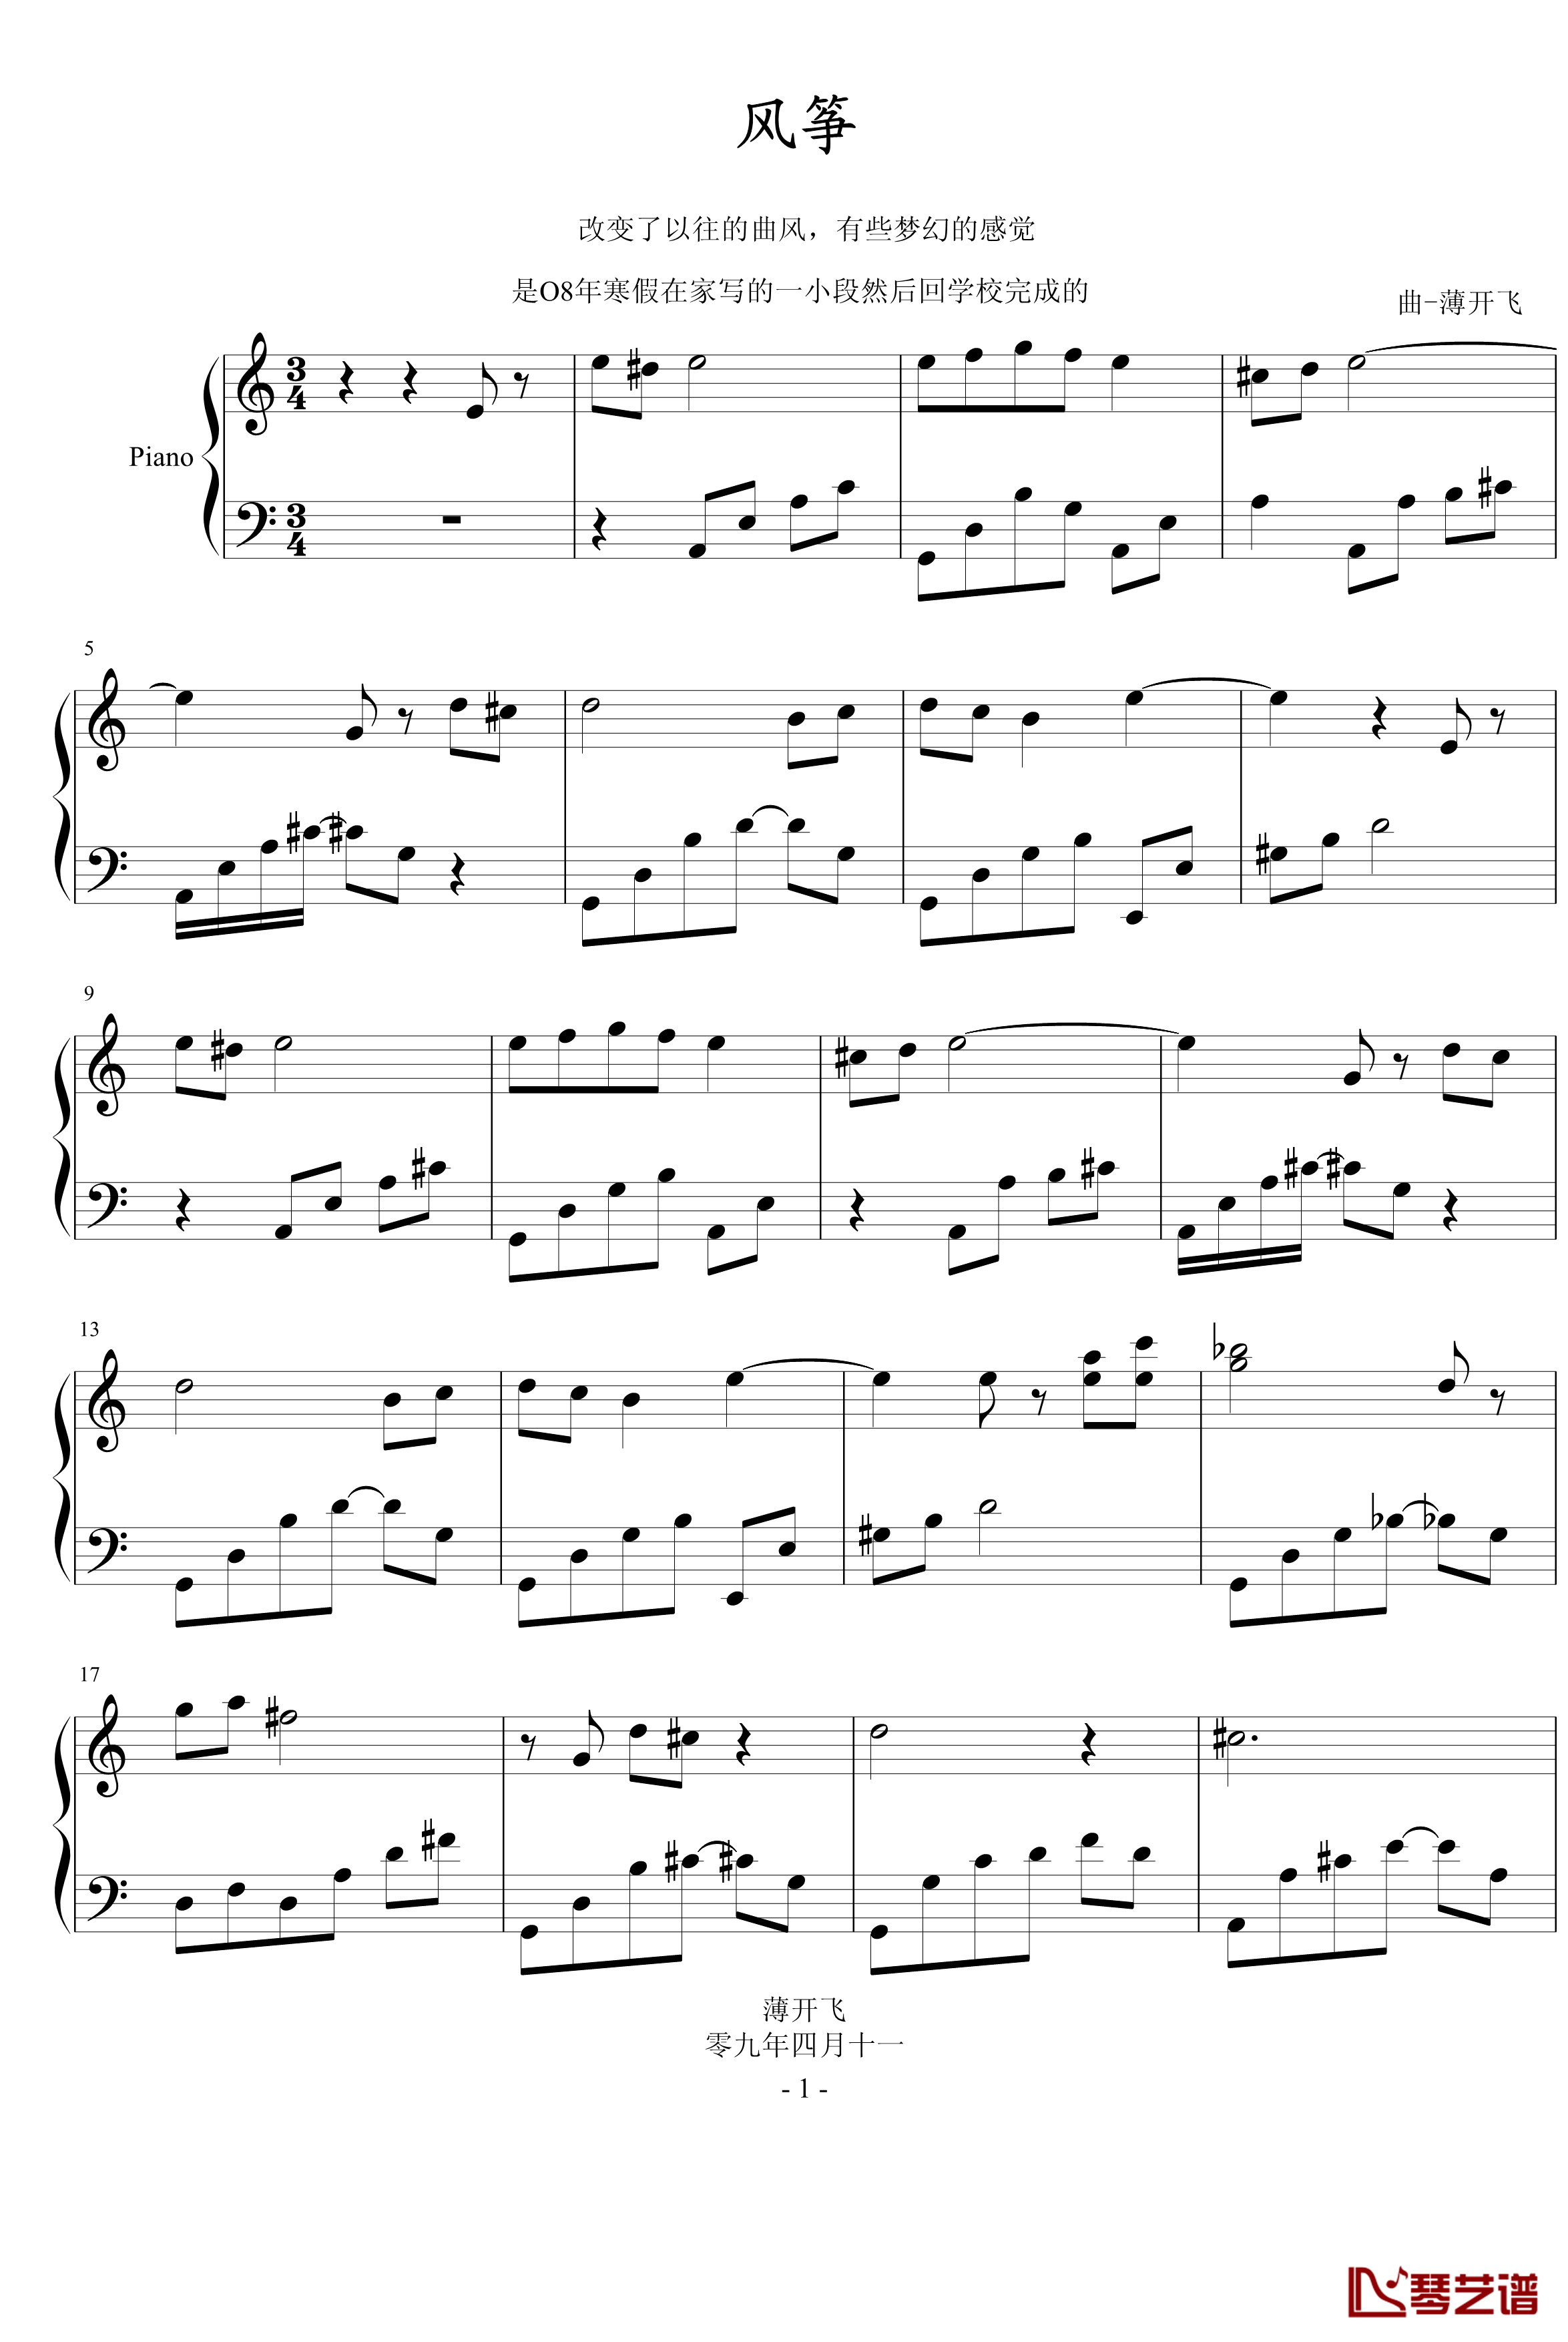 风筝钢琴谱-薄书艺1